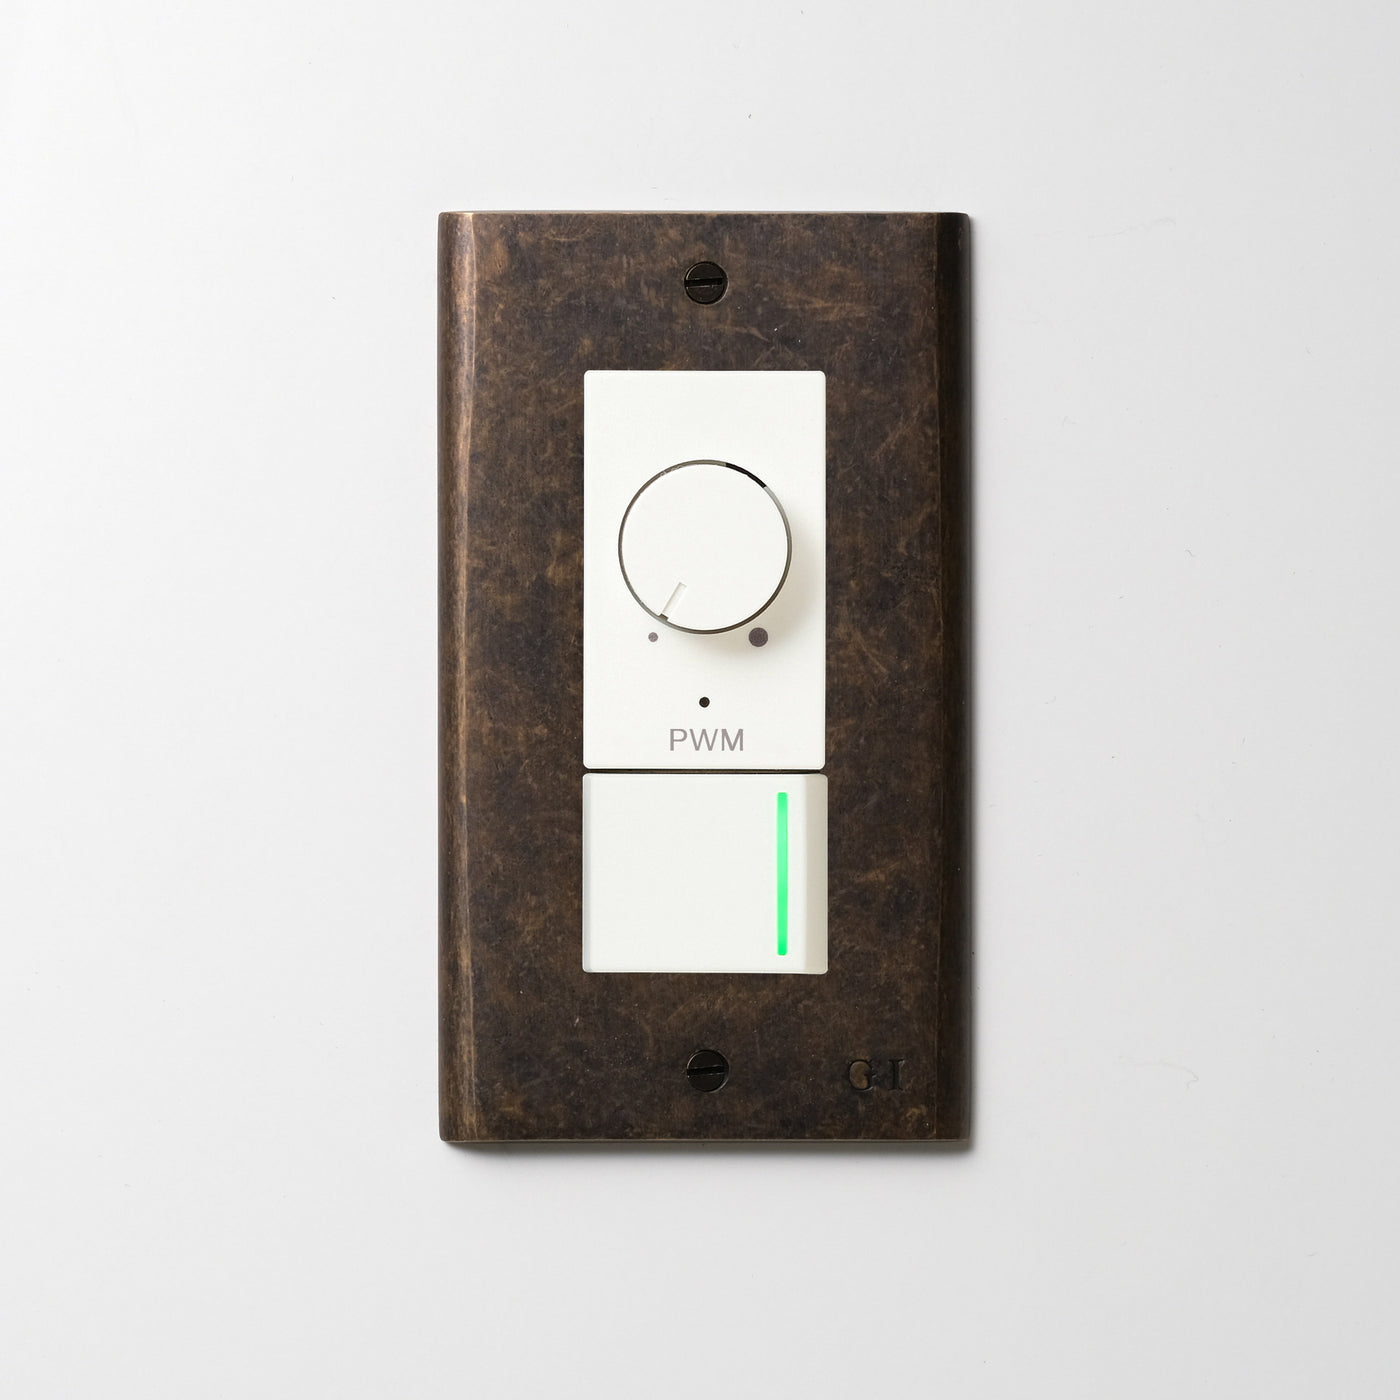 真鍮（エイジング）プレート <br>+ NK PWM制御方式(1ch)ライトコントロール＋片切、3路ガイドランプ（グリーン）スイッチ　 ホワイト